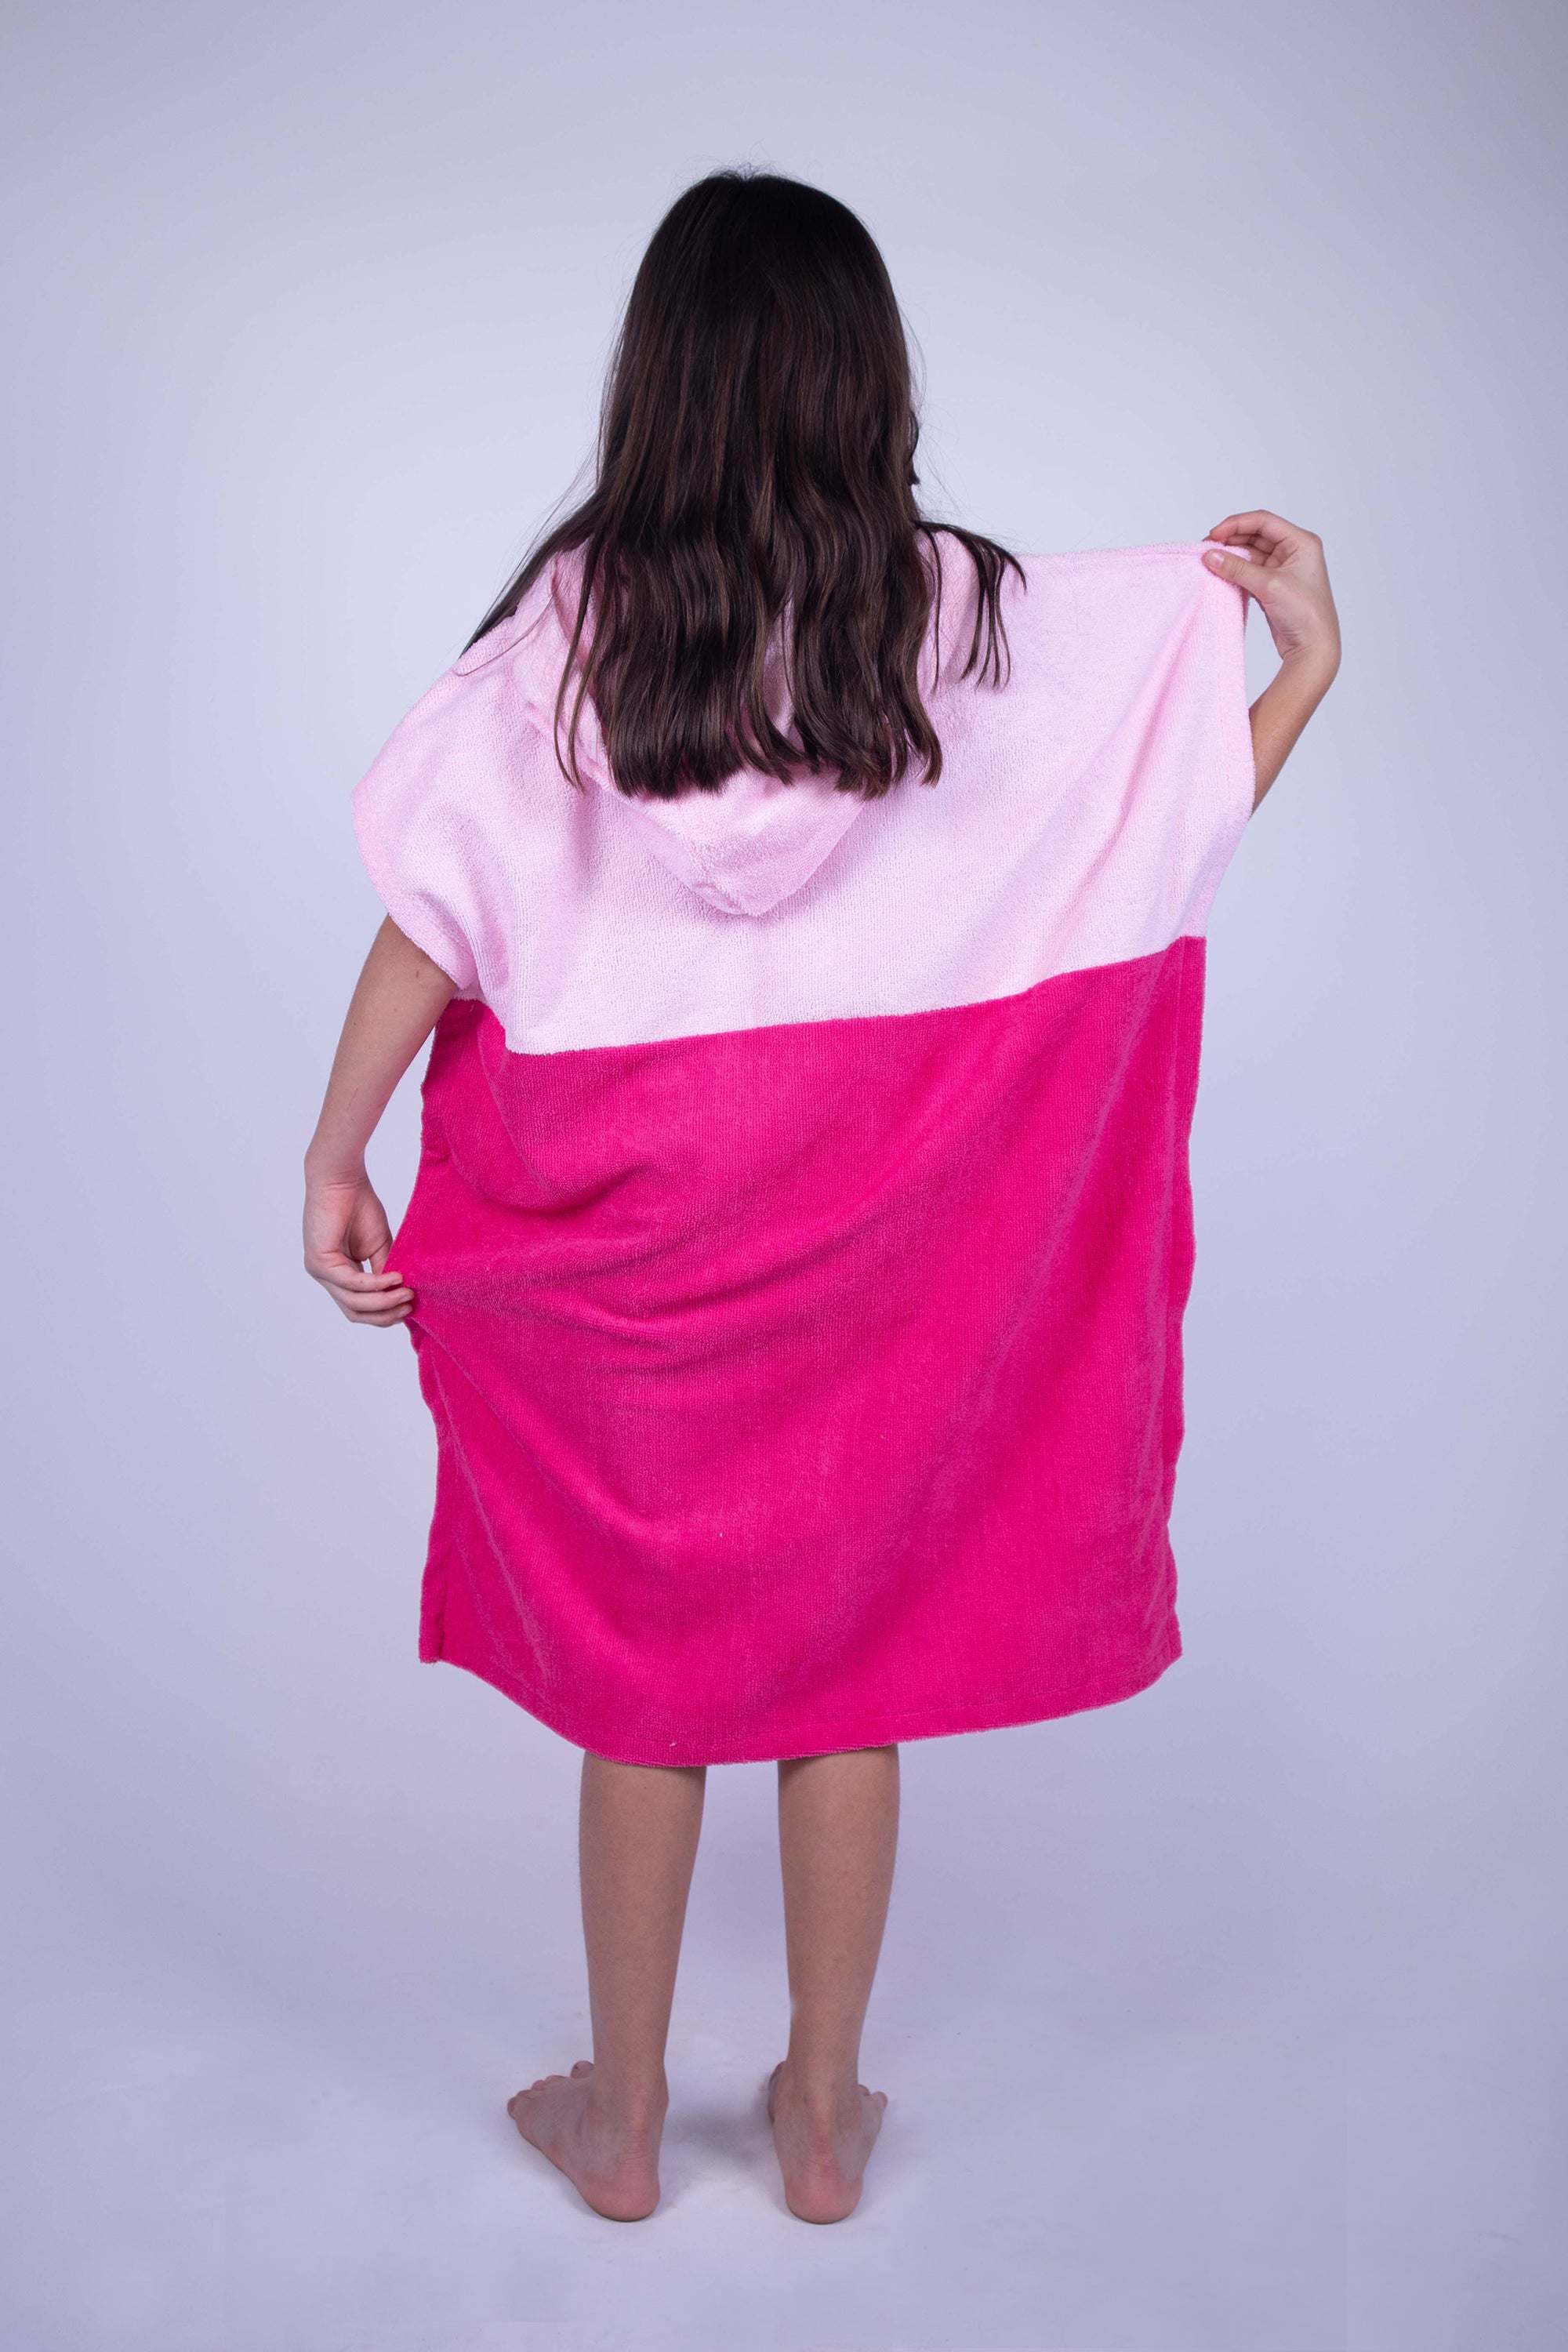 Poncho toalla cambiador de dos colores (Baby pink y rosa mexicano), con bolso en frente y gorro. Ideal para cambiarte en cualquier lugar cómodamente y estar en el después del agua. Para niños y niñas.